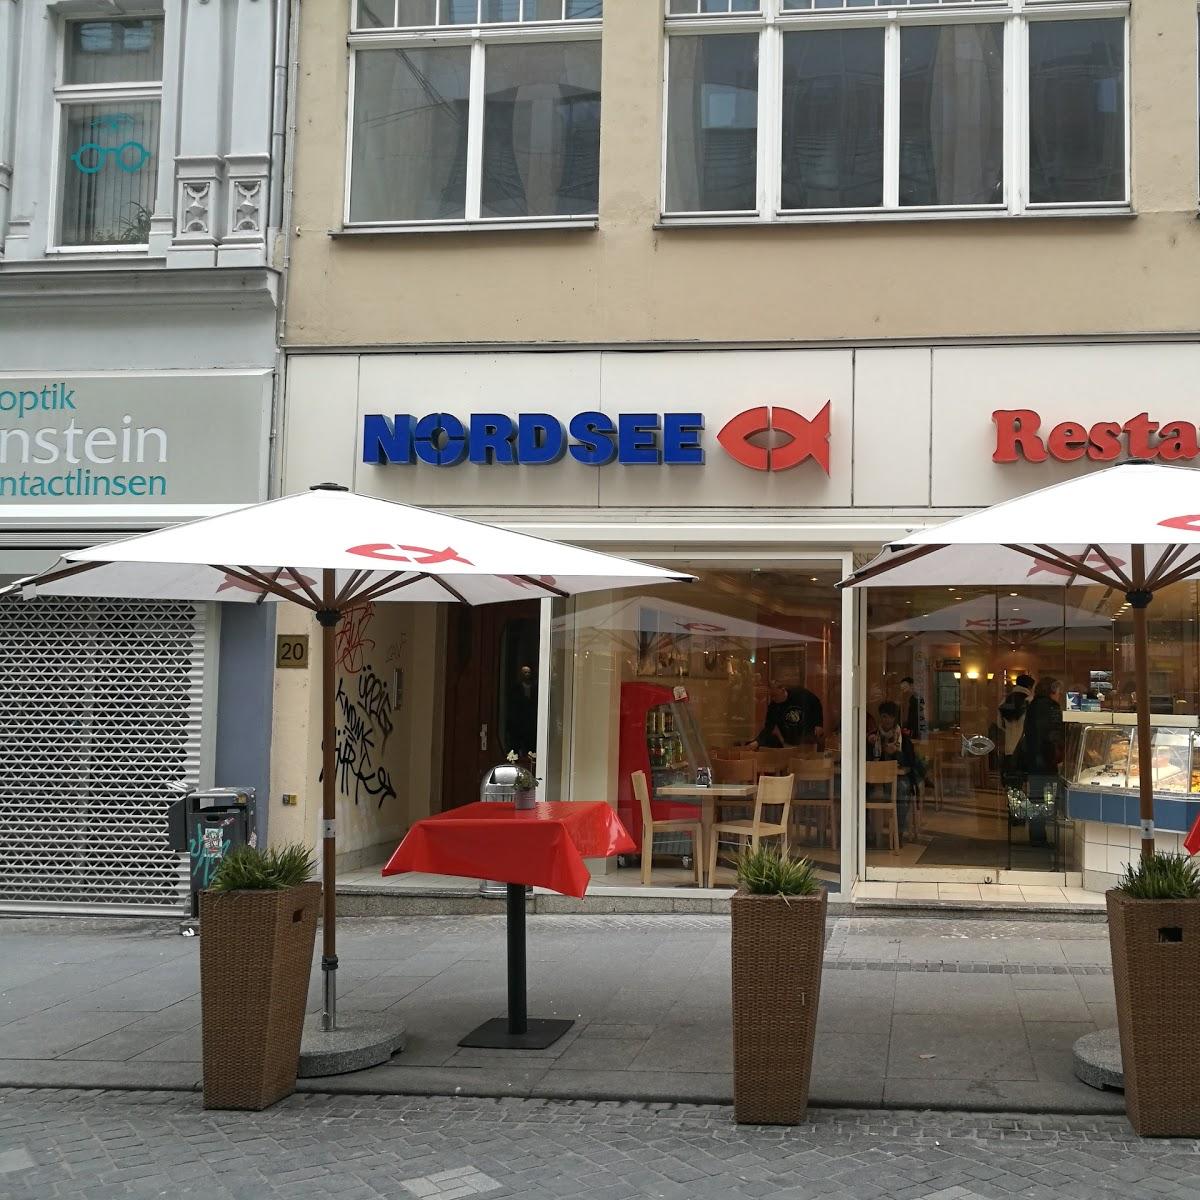 Restaurant "NORDSEE Halle Leipziger Straße" in Halle (Saale)